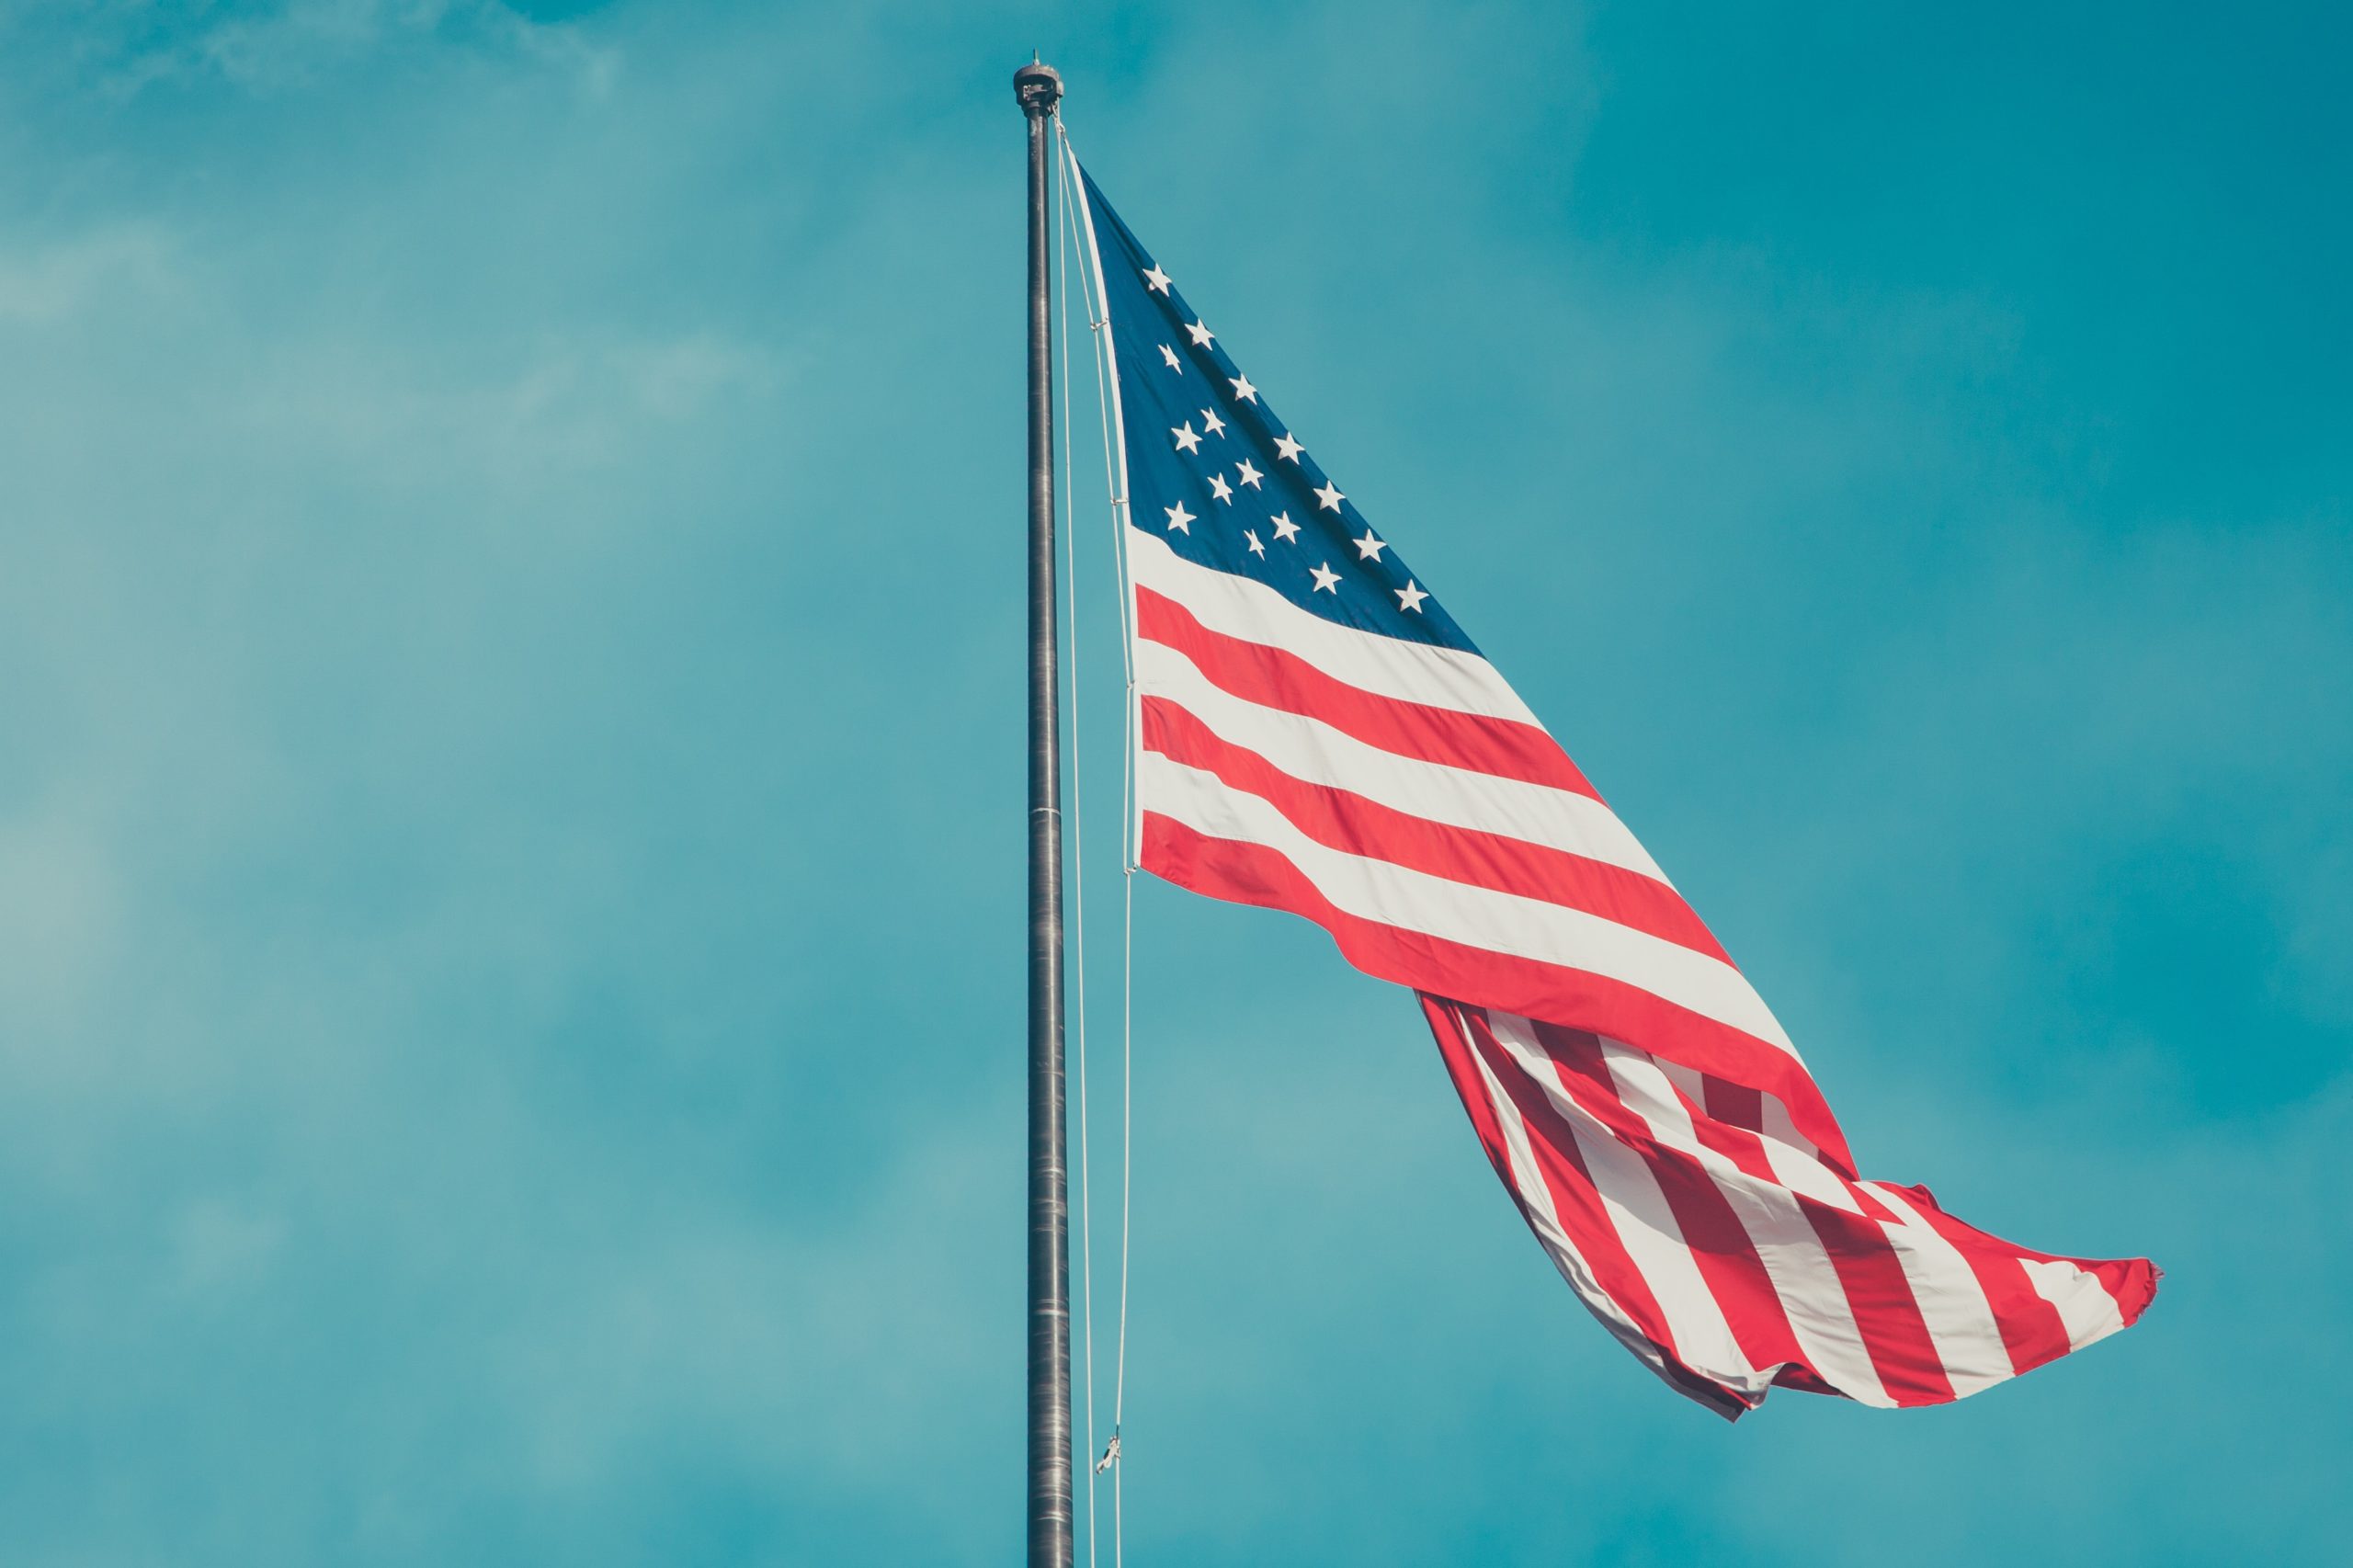 An American flag against a blue sky